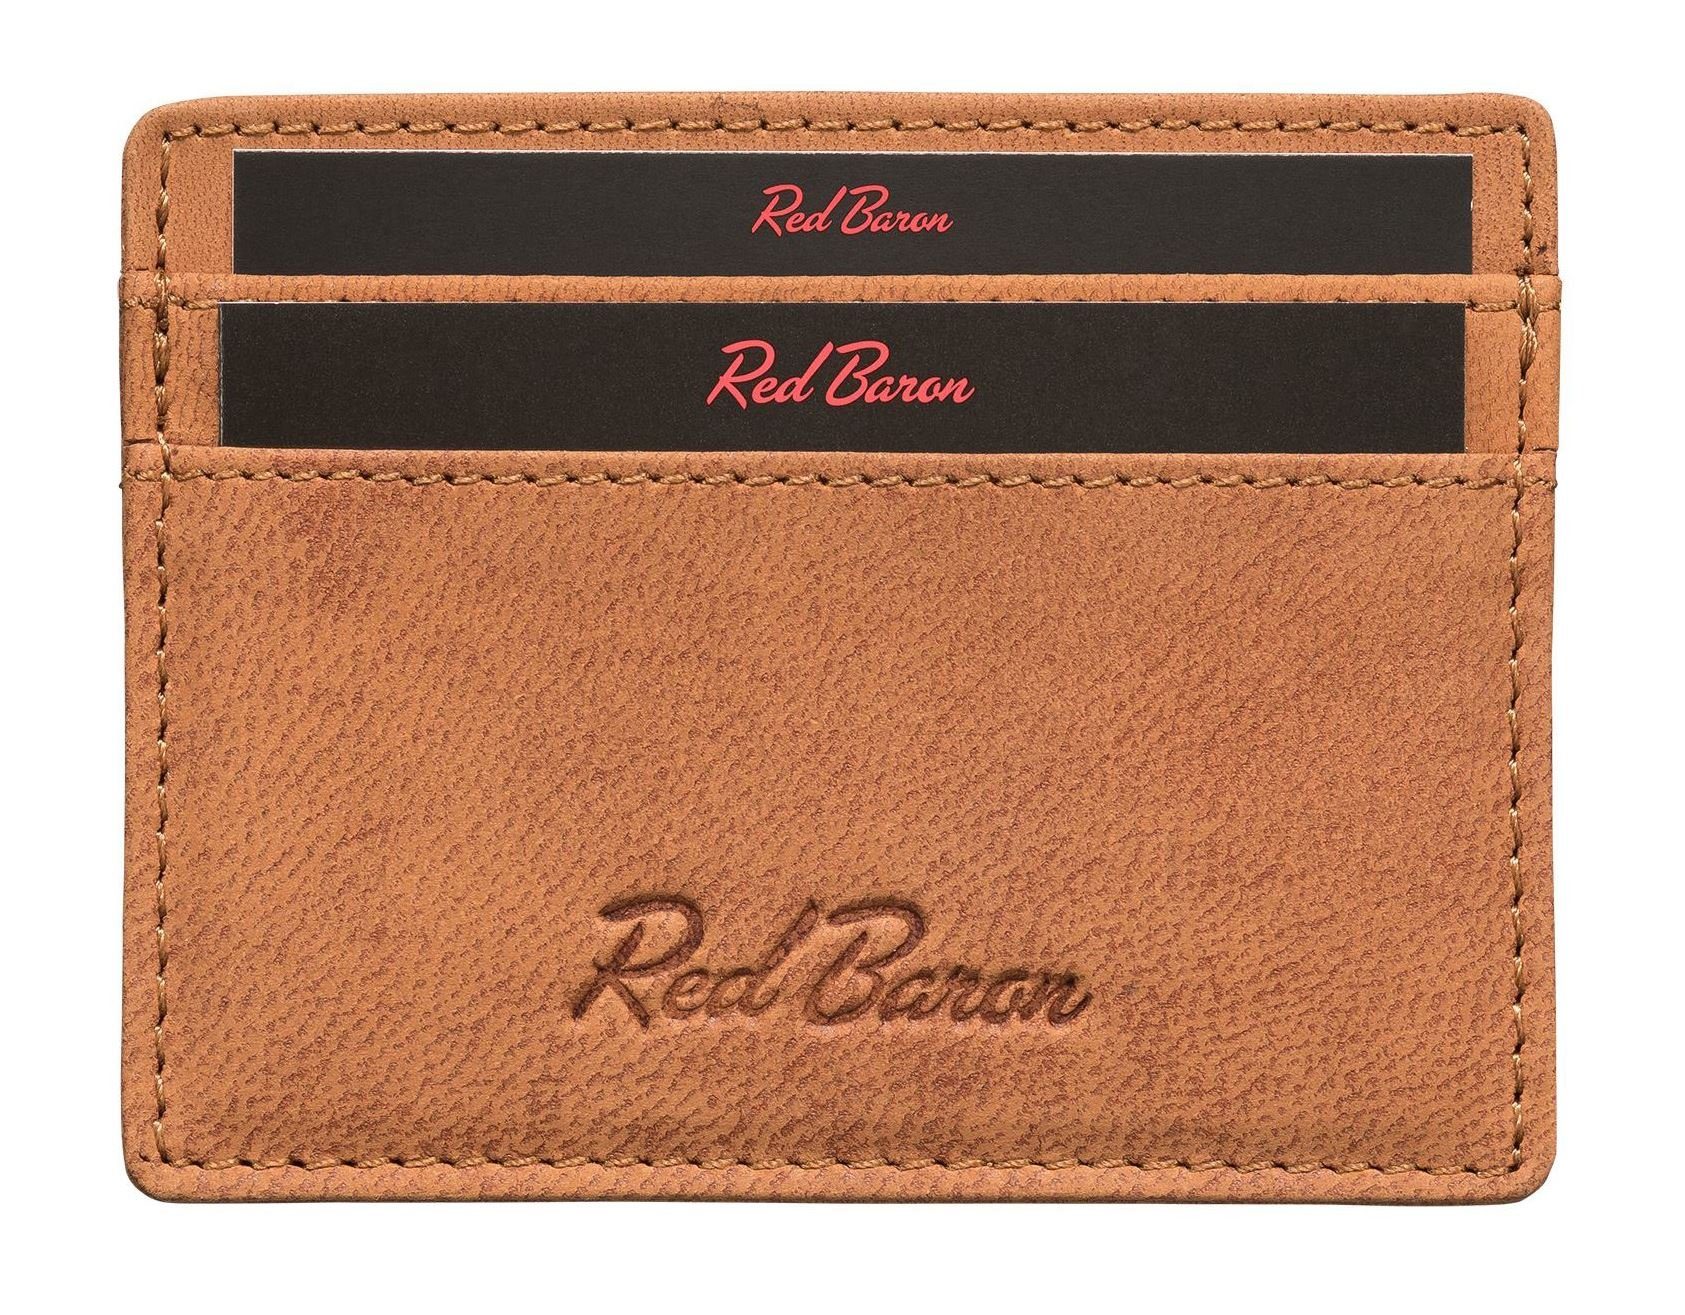 Red Baron Kartenetui RB-CC-001-02, 4 Kreditkartenfächer, Leder, schlicht, einfach